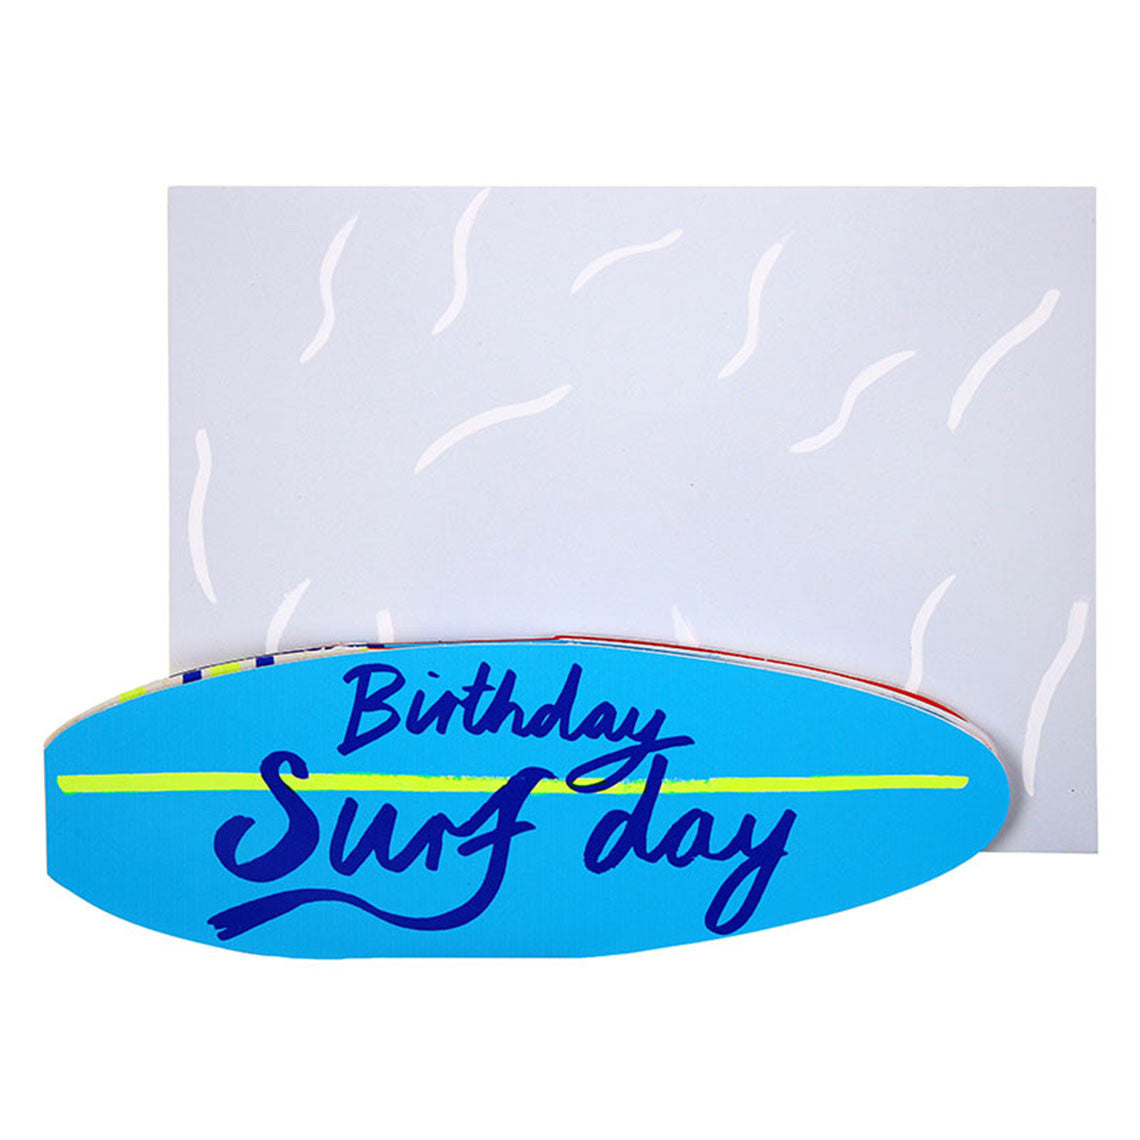 Birthday Surfday Card